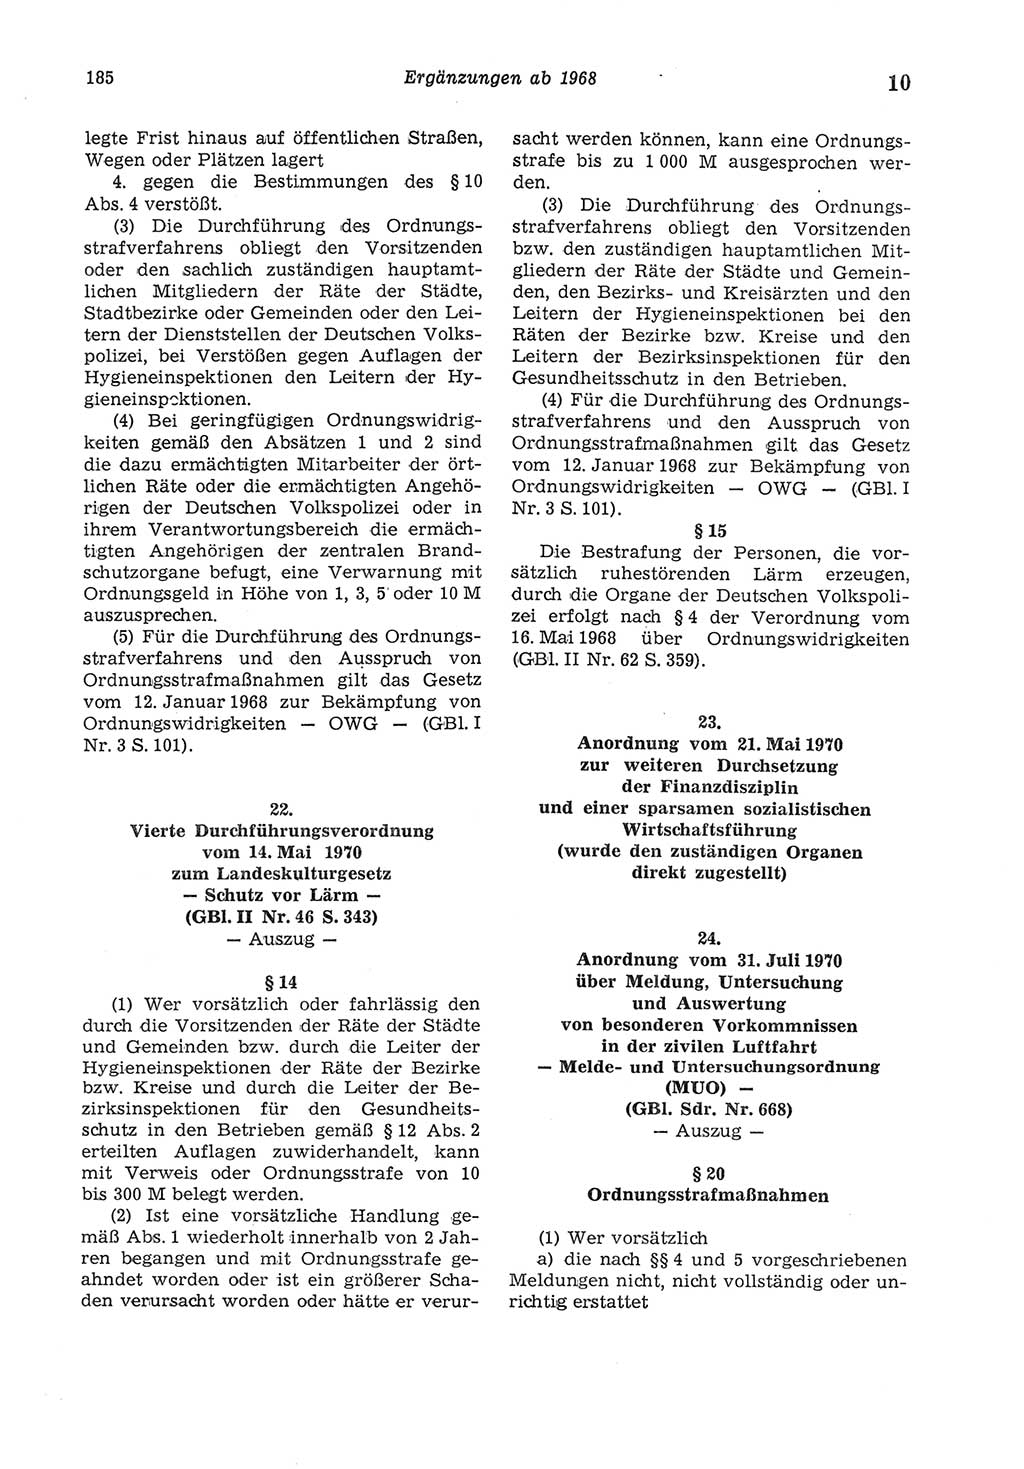 Strafgesetzbuch (StGB) der Deutschen Demokratischen Republik (DDR) und angrenzende Gesetze und Bestimmungen 1975, Seite 185 (StGB DDR Ges. Best. 1975, S. 185)